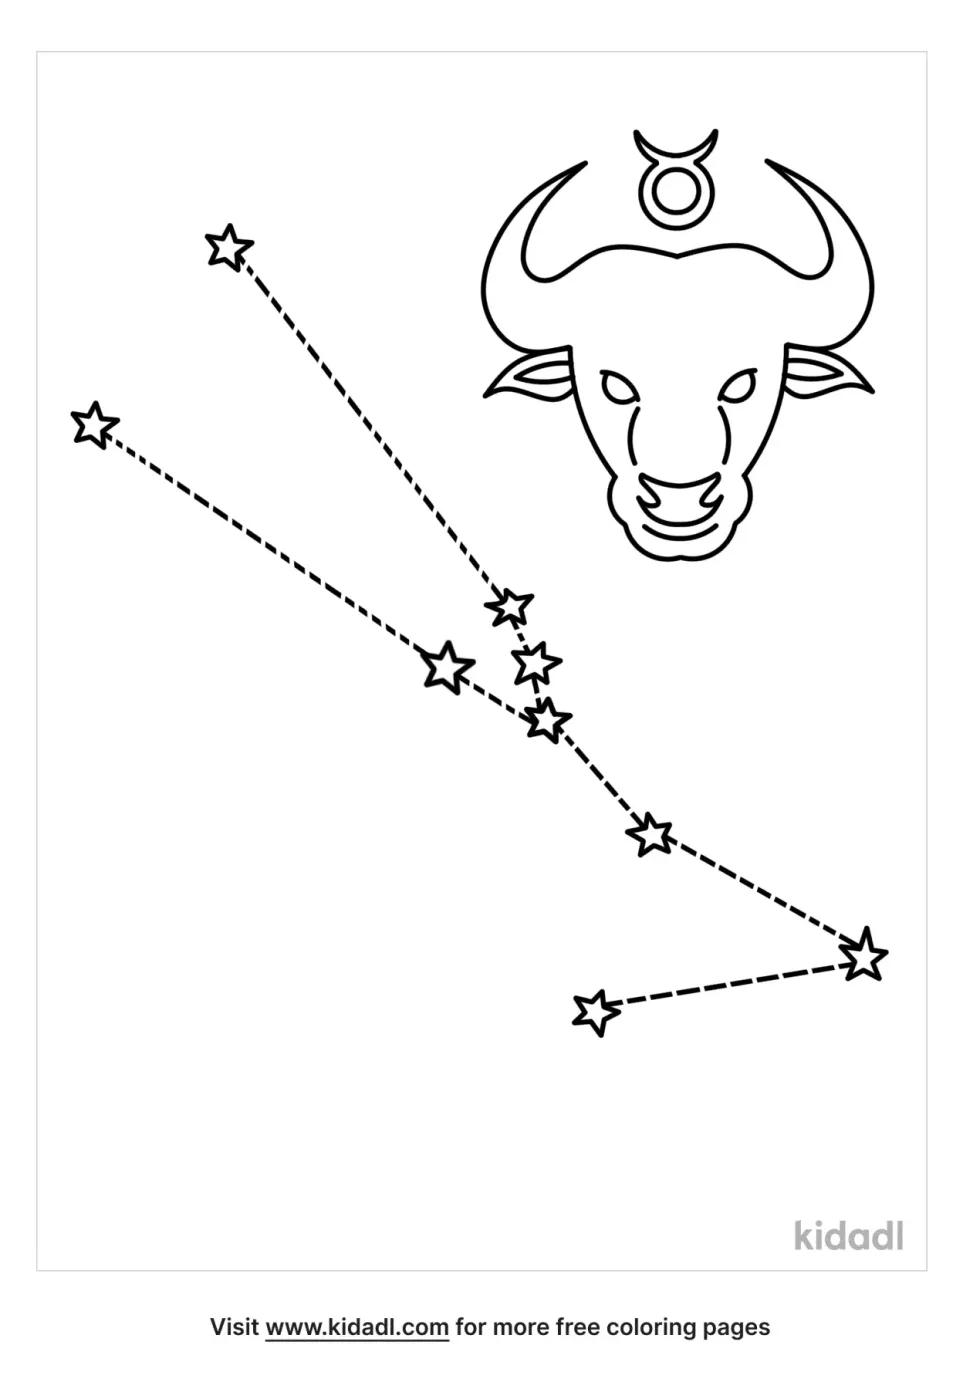 Taurus Stars